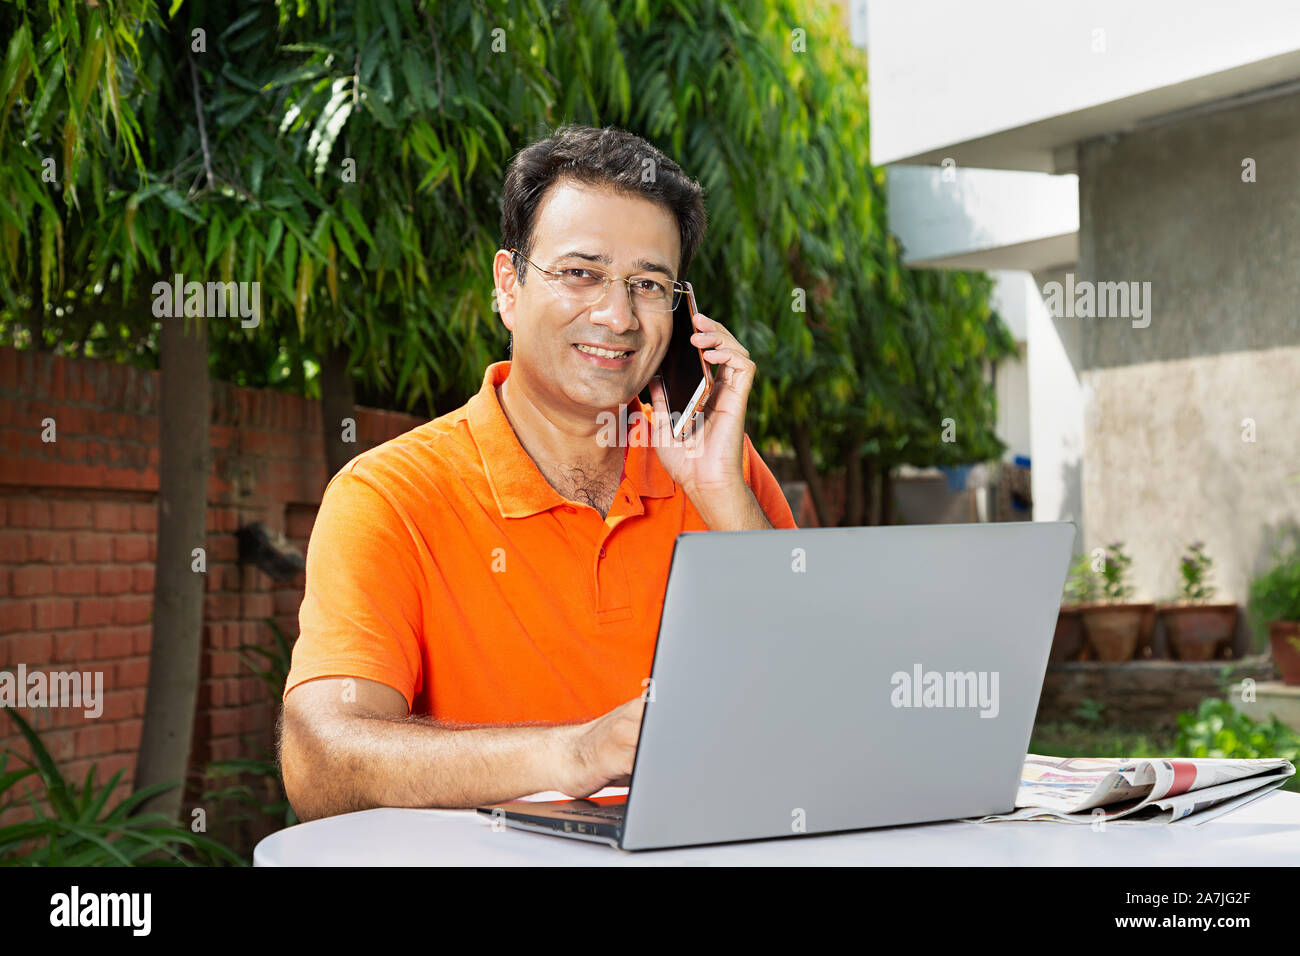 Portrait von lächelnden Mitte erwachsenen männlichen Sitzen-auf-Tabelle Gespräch am Handy mit Arbeiten am Laptop - Hof - Ihr Haus Stockfoto